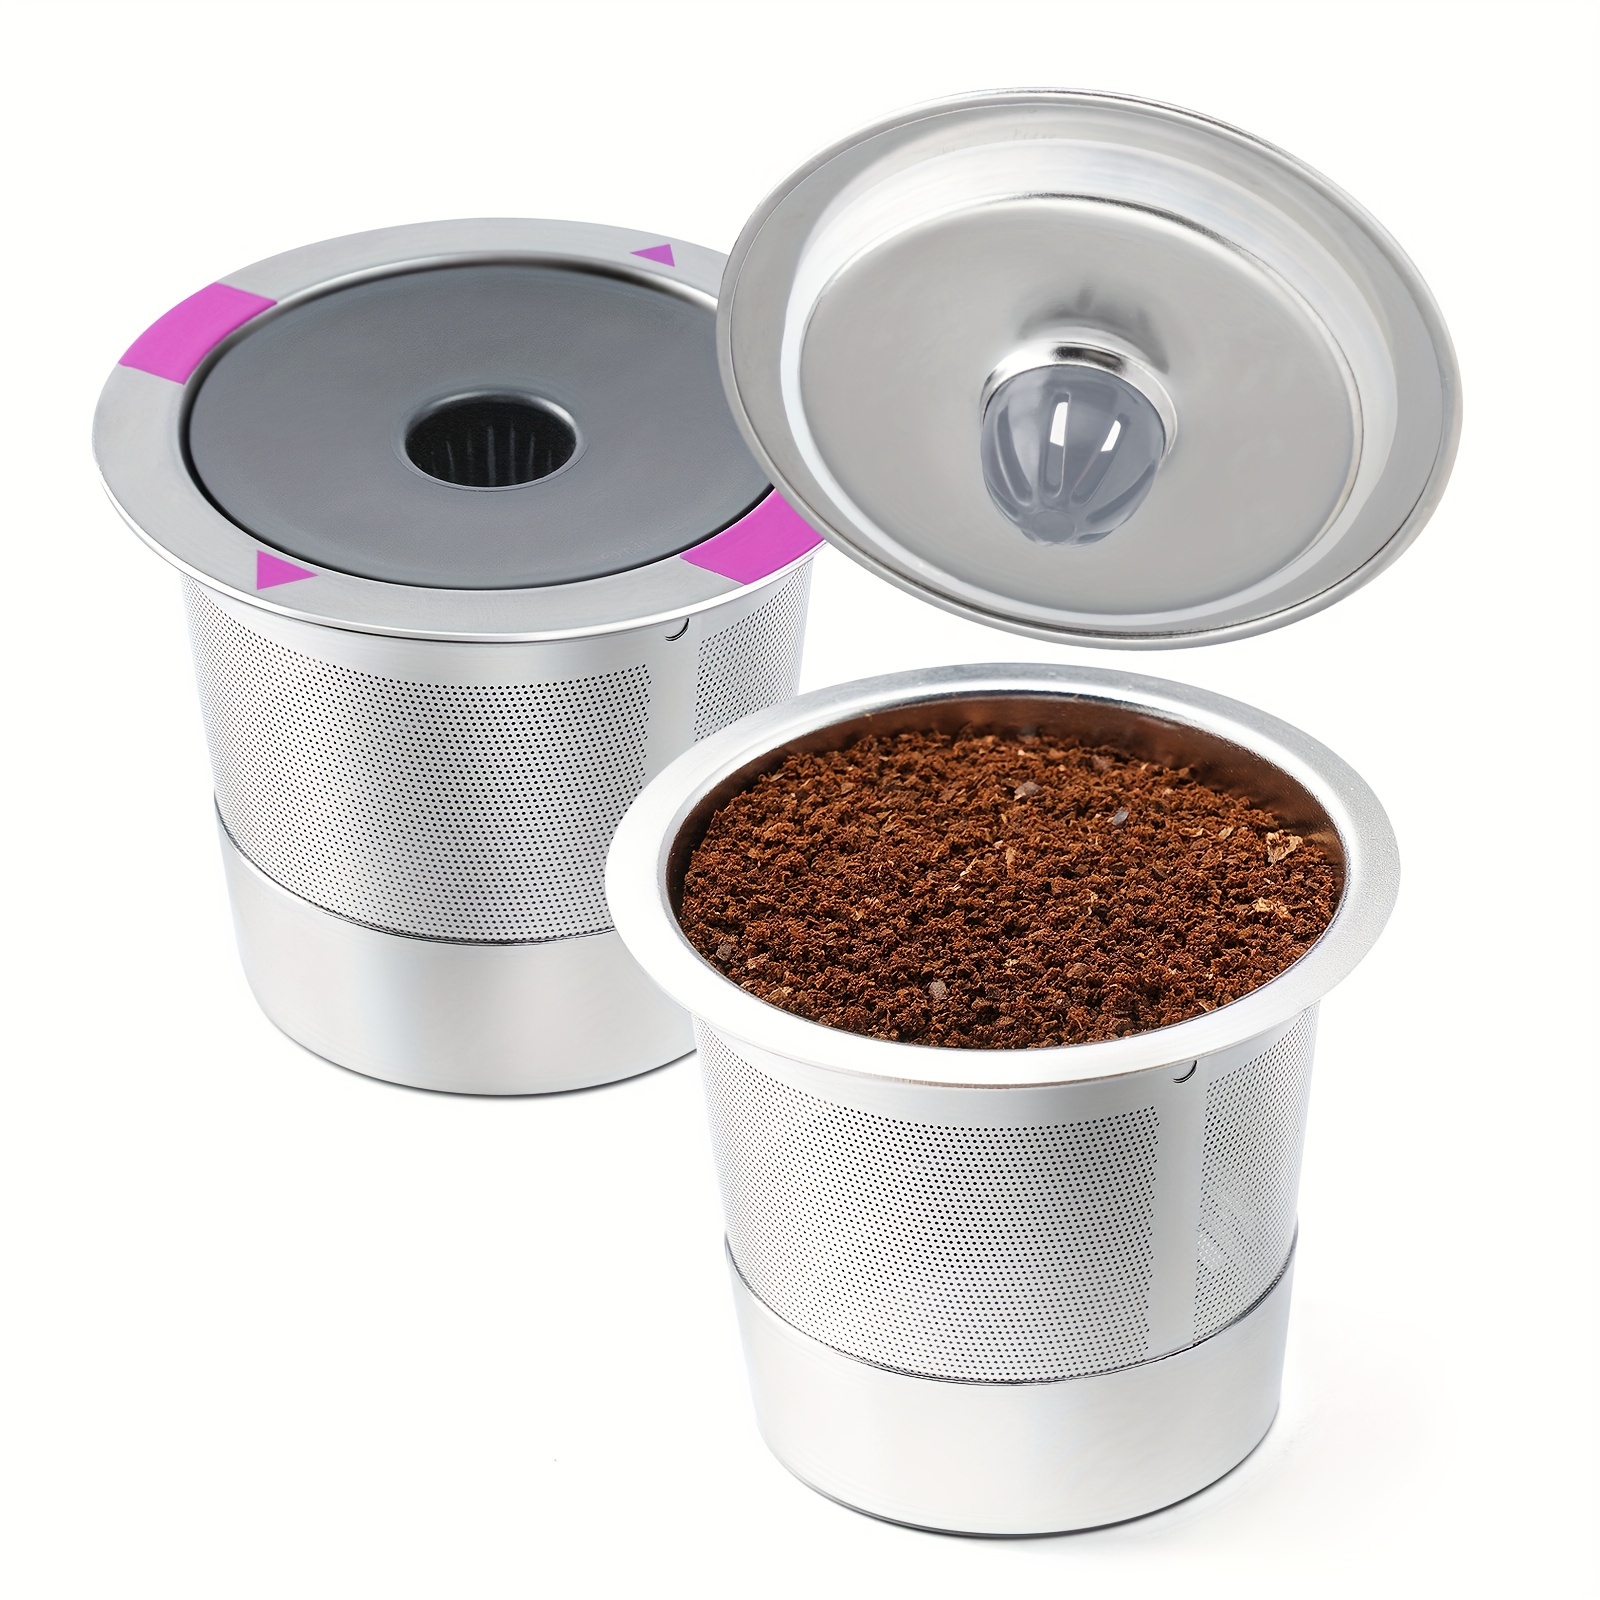 Filtros de café K Cup reutilizables de 1 pieza para Keurig - Temu